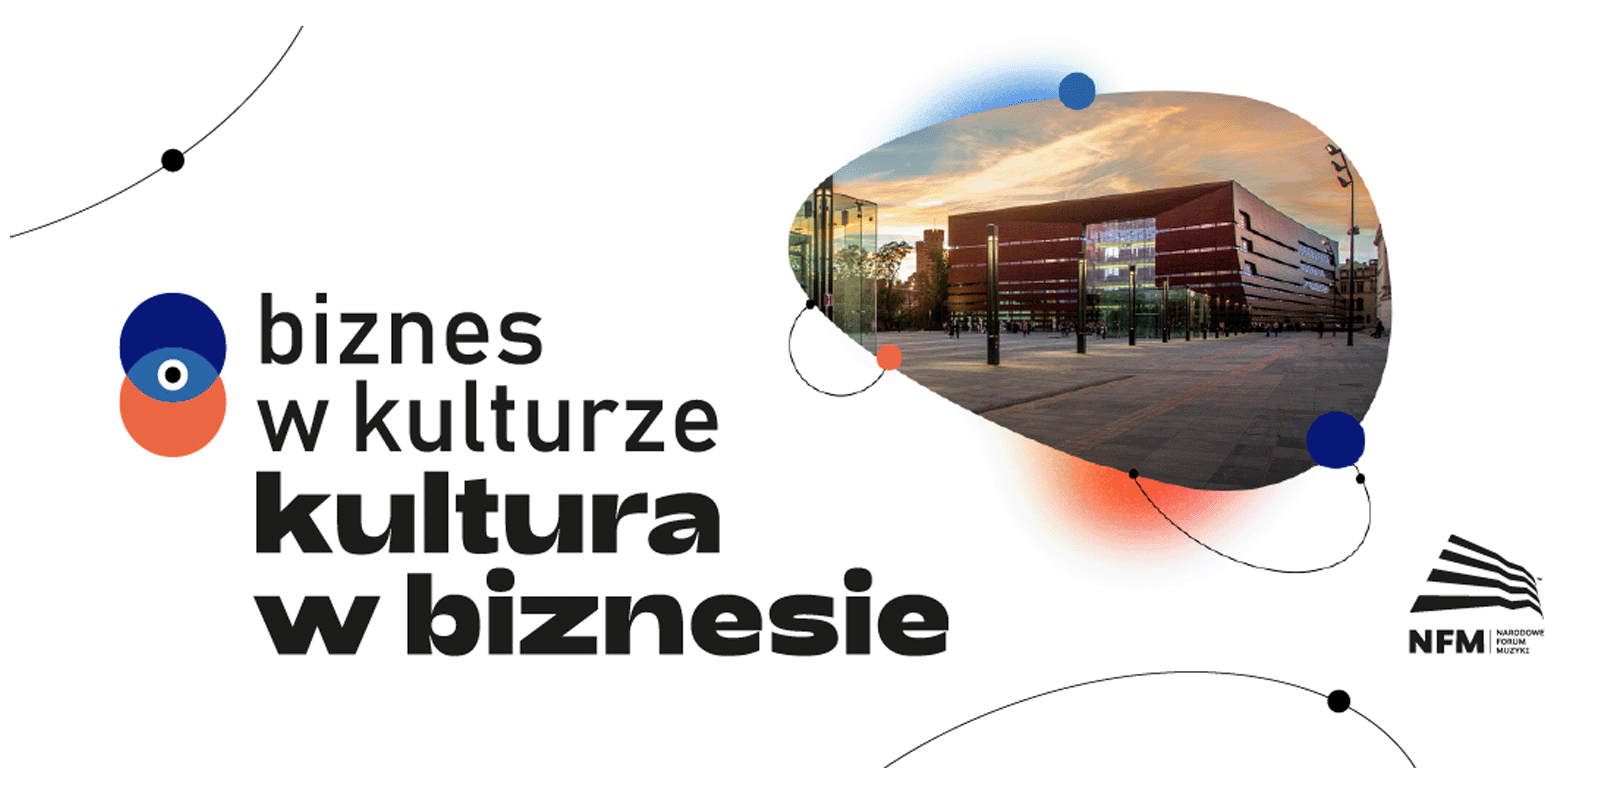 Debata „Biznes w kulturze – kultura w biznesie” Narodowego Forum Muzyki już w listopadzie! muzyka MEDIARUN COM NARODOWE FORUM MUZYKI DEBATA V1